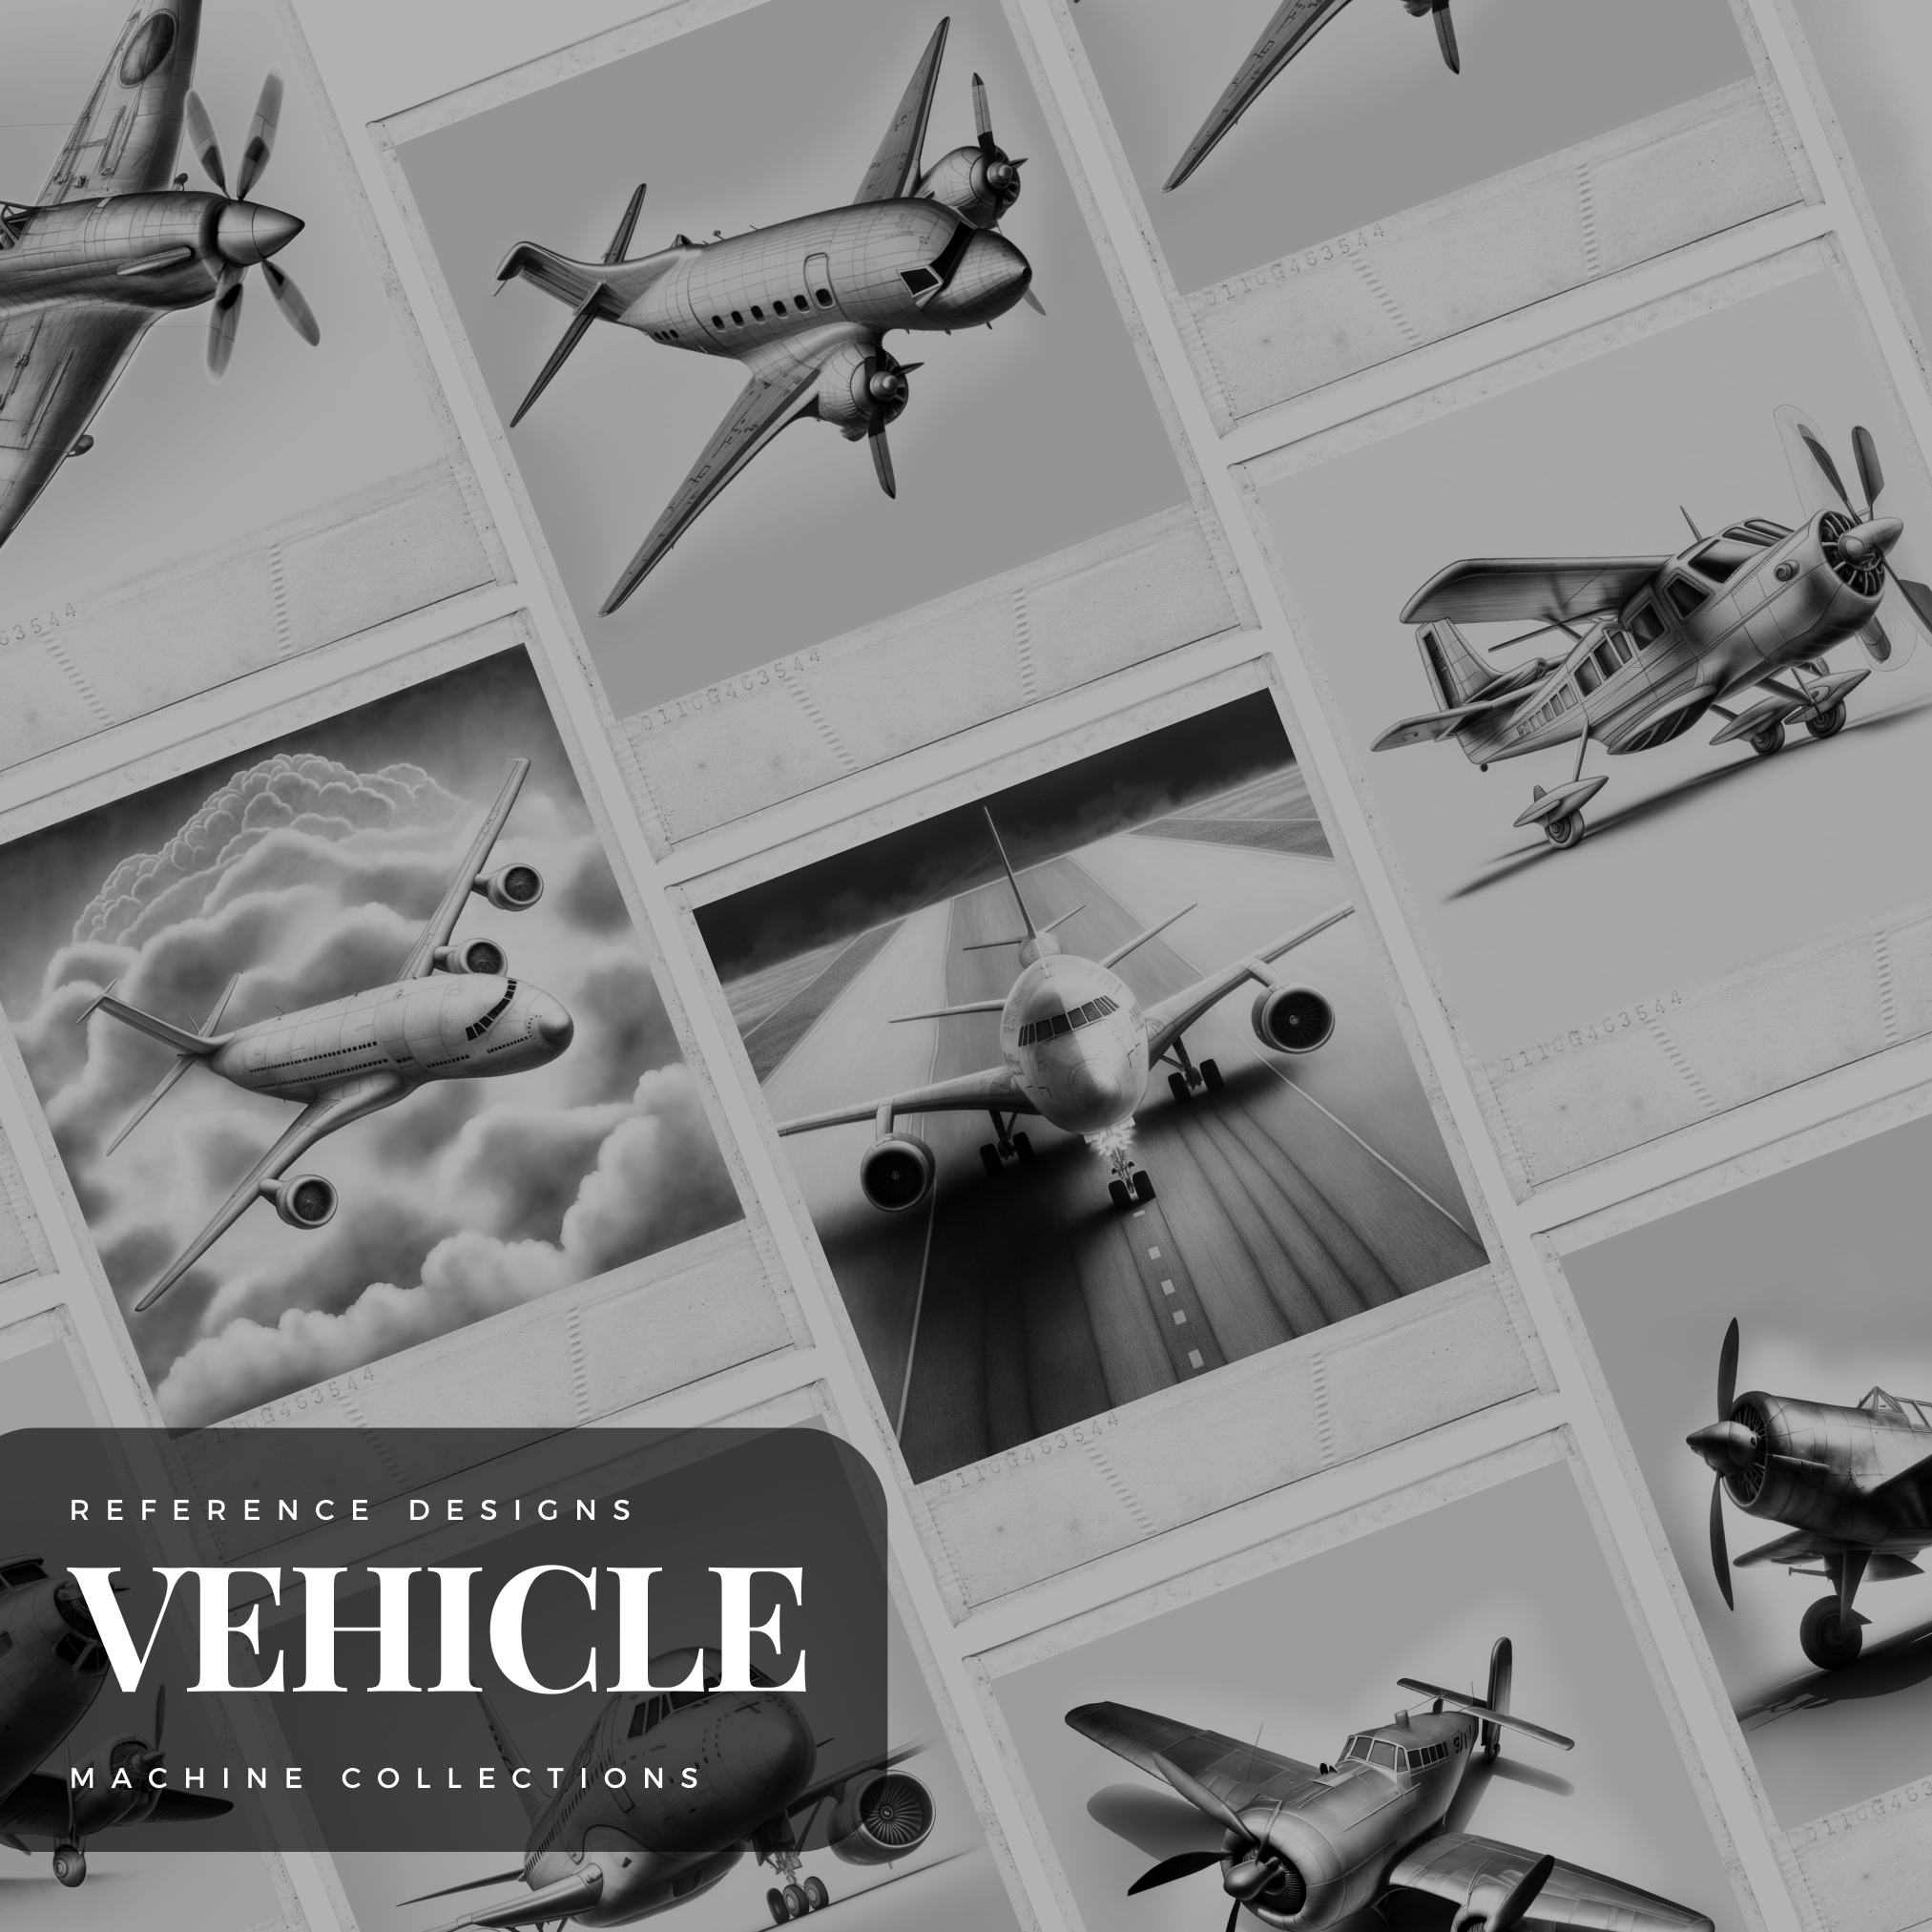 Aeroplanes Digital Design Collection: 50 Procreate & Sketchbook Images